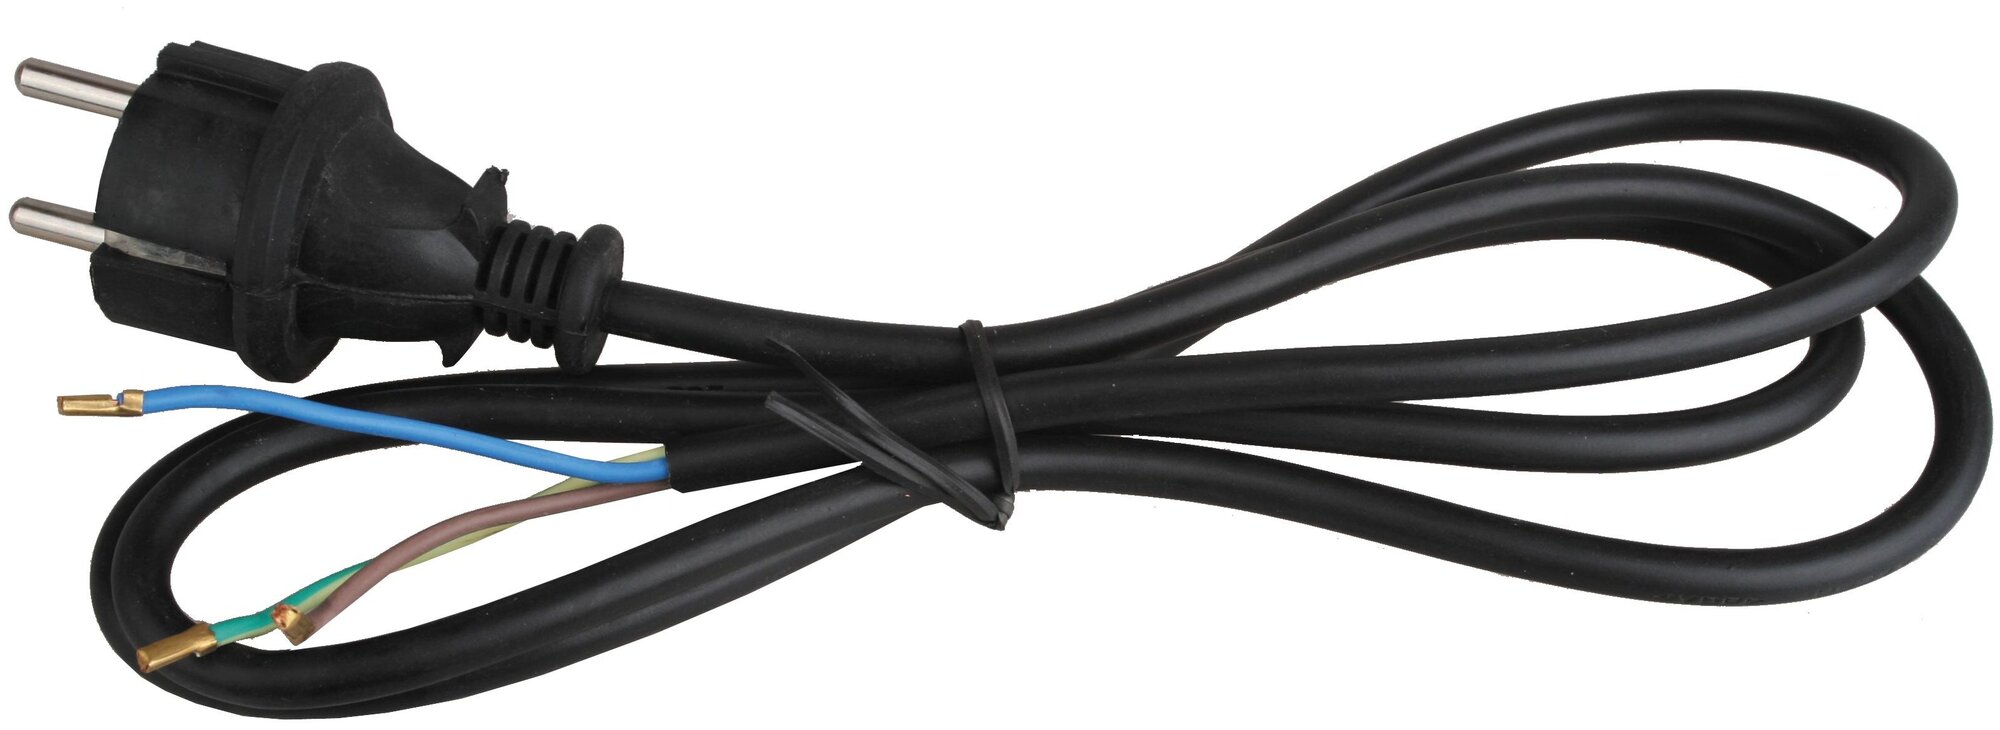 Сетевой кабель с прямой евровилкой Volsten S-LR2A Bl 9345 15081342